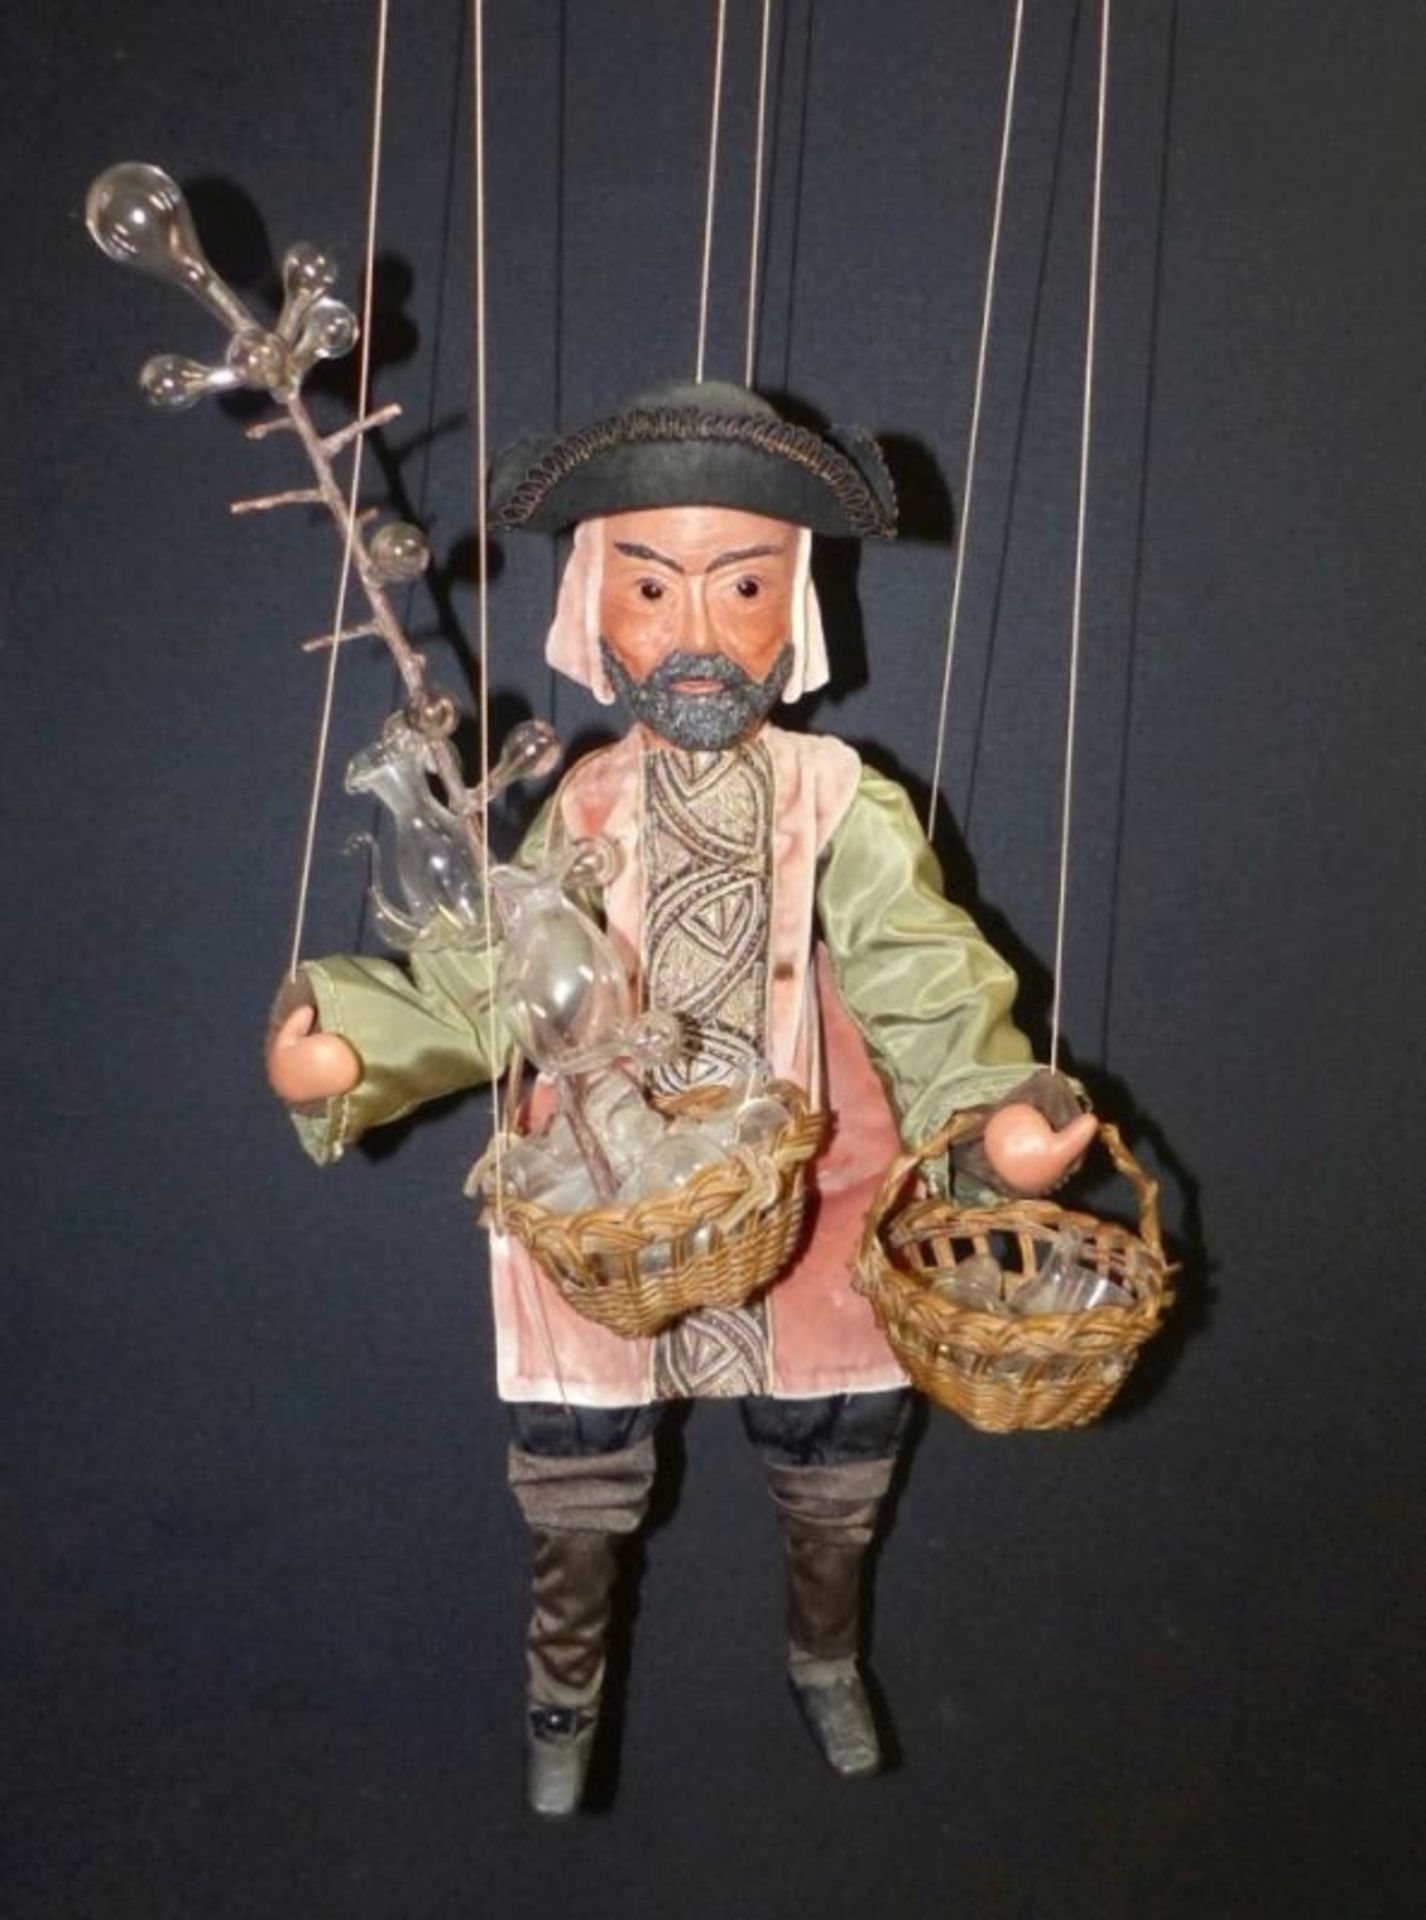 Seltene Marionettenfigur eines Glashändlers19. Jh.Bewegliche Puppe mit sechs Fäden an Waagekreuz.